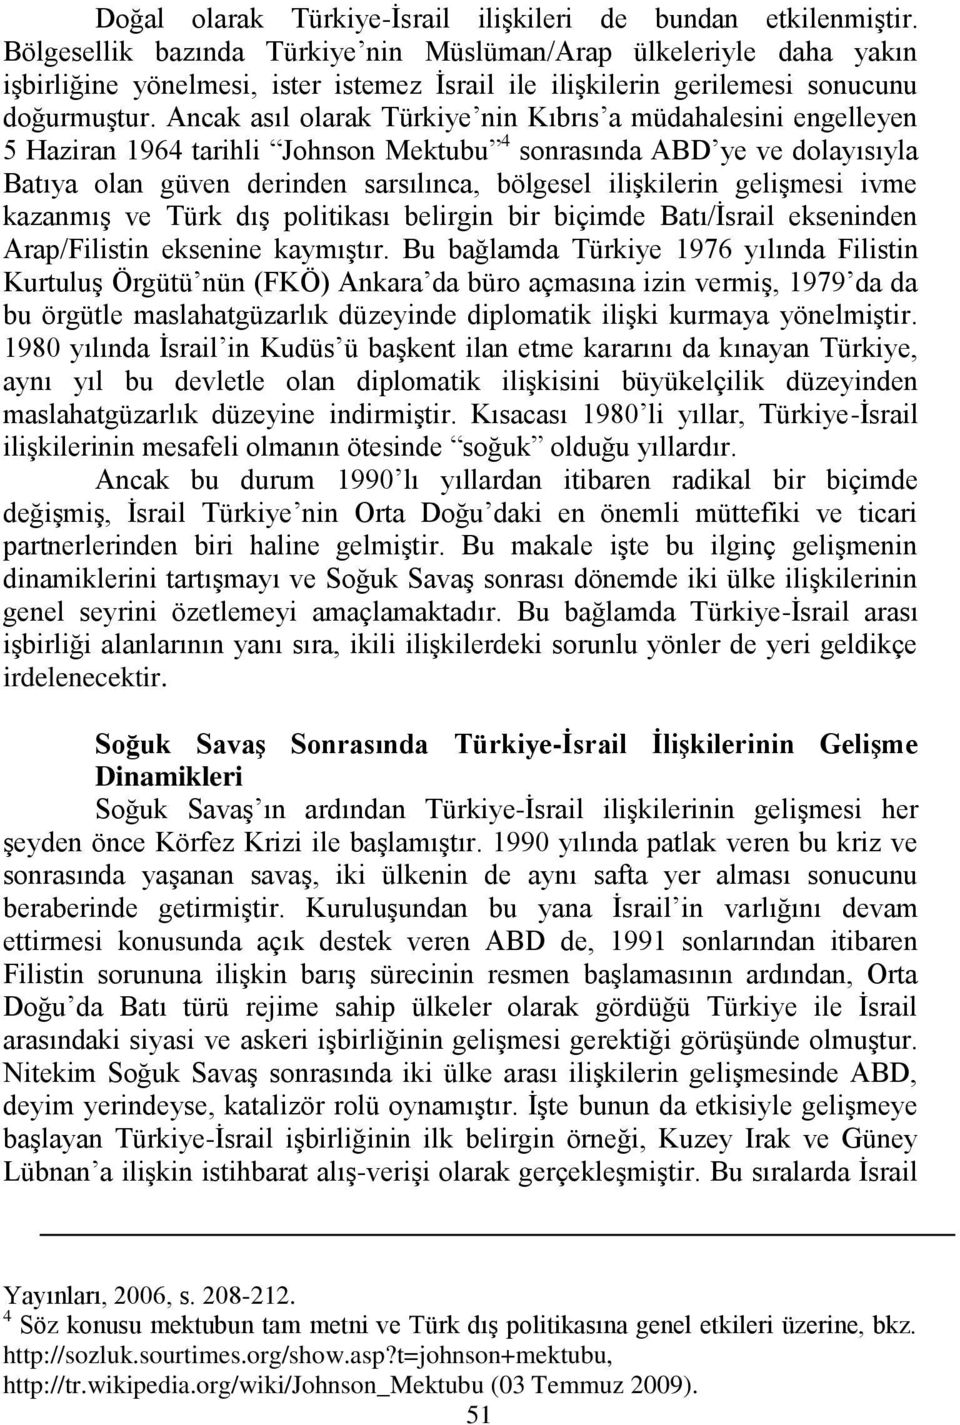 Ancak asıl olarak Türkiye nin Kıbrıs a müdahalesini engelleyen 5 Haziran 1964 tarihli Johnson Mektubu 4 sonrasında ABD ye ve dolayısıyla Batıya olan güven derinden sarsılınca, bölgesel iliģkilerin